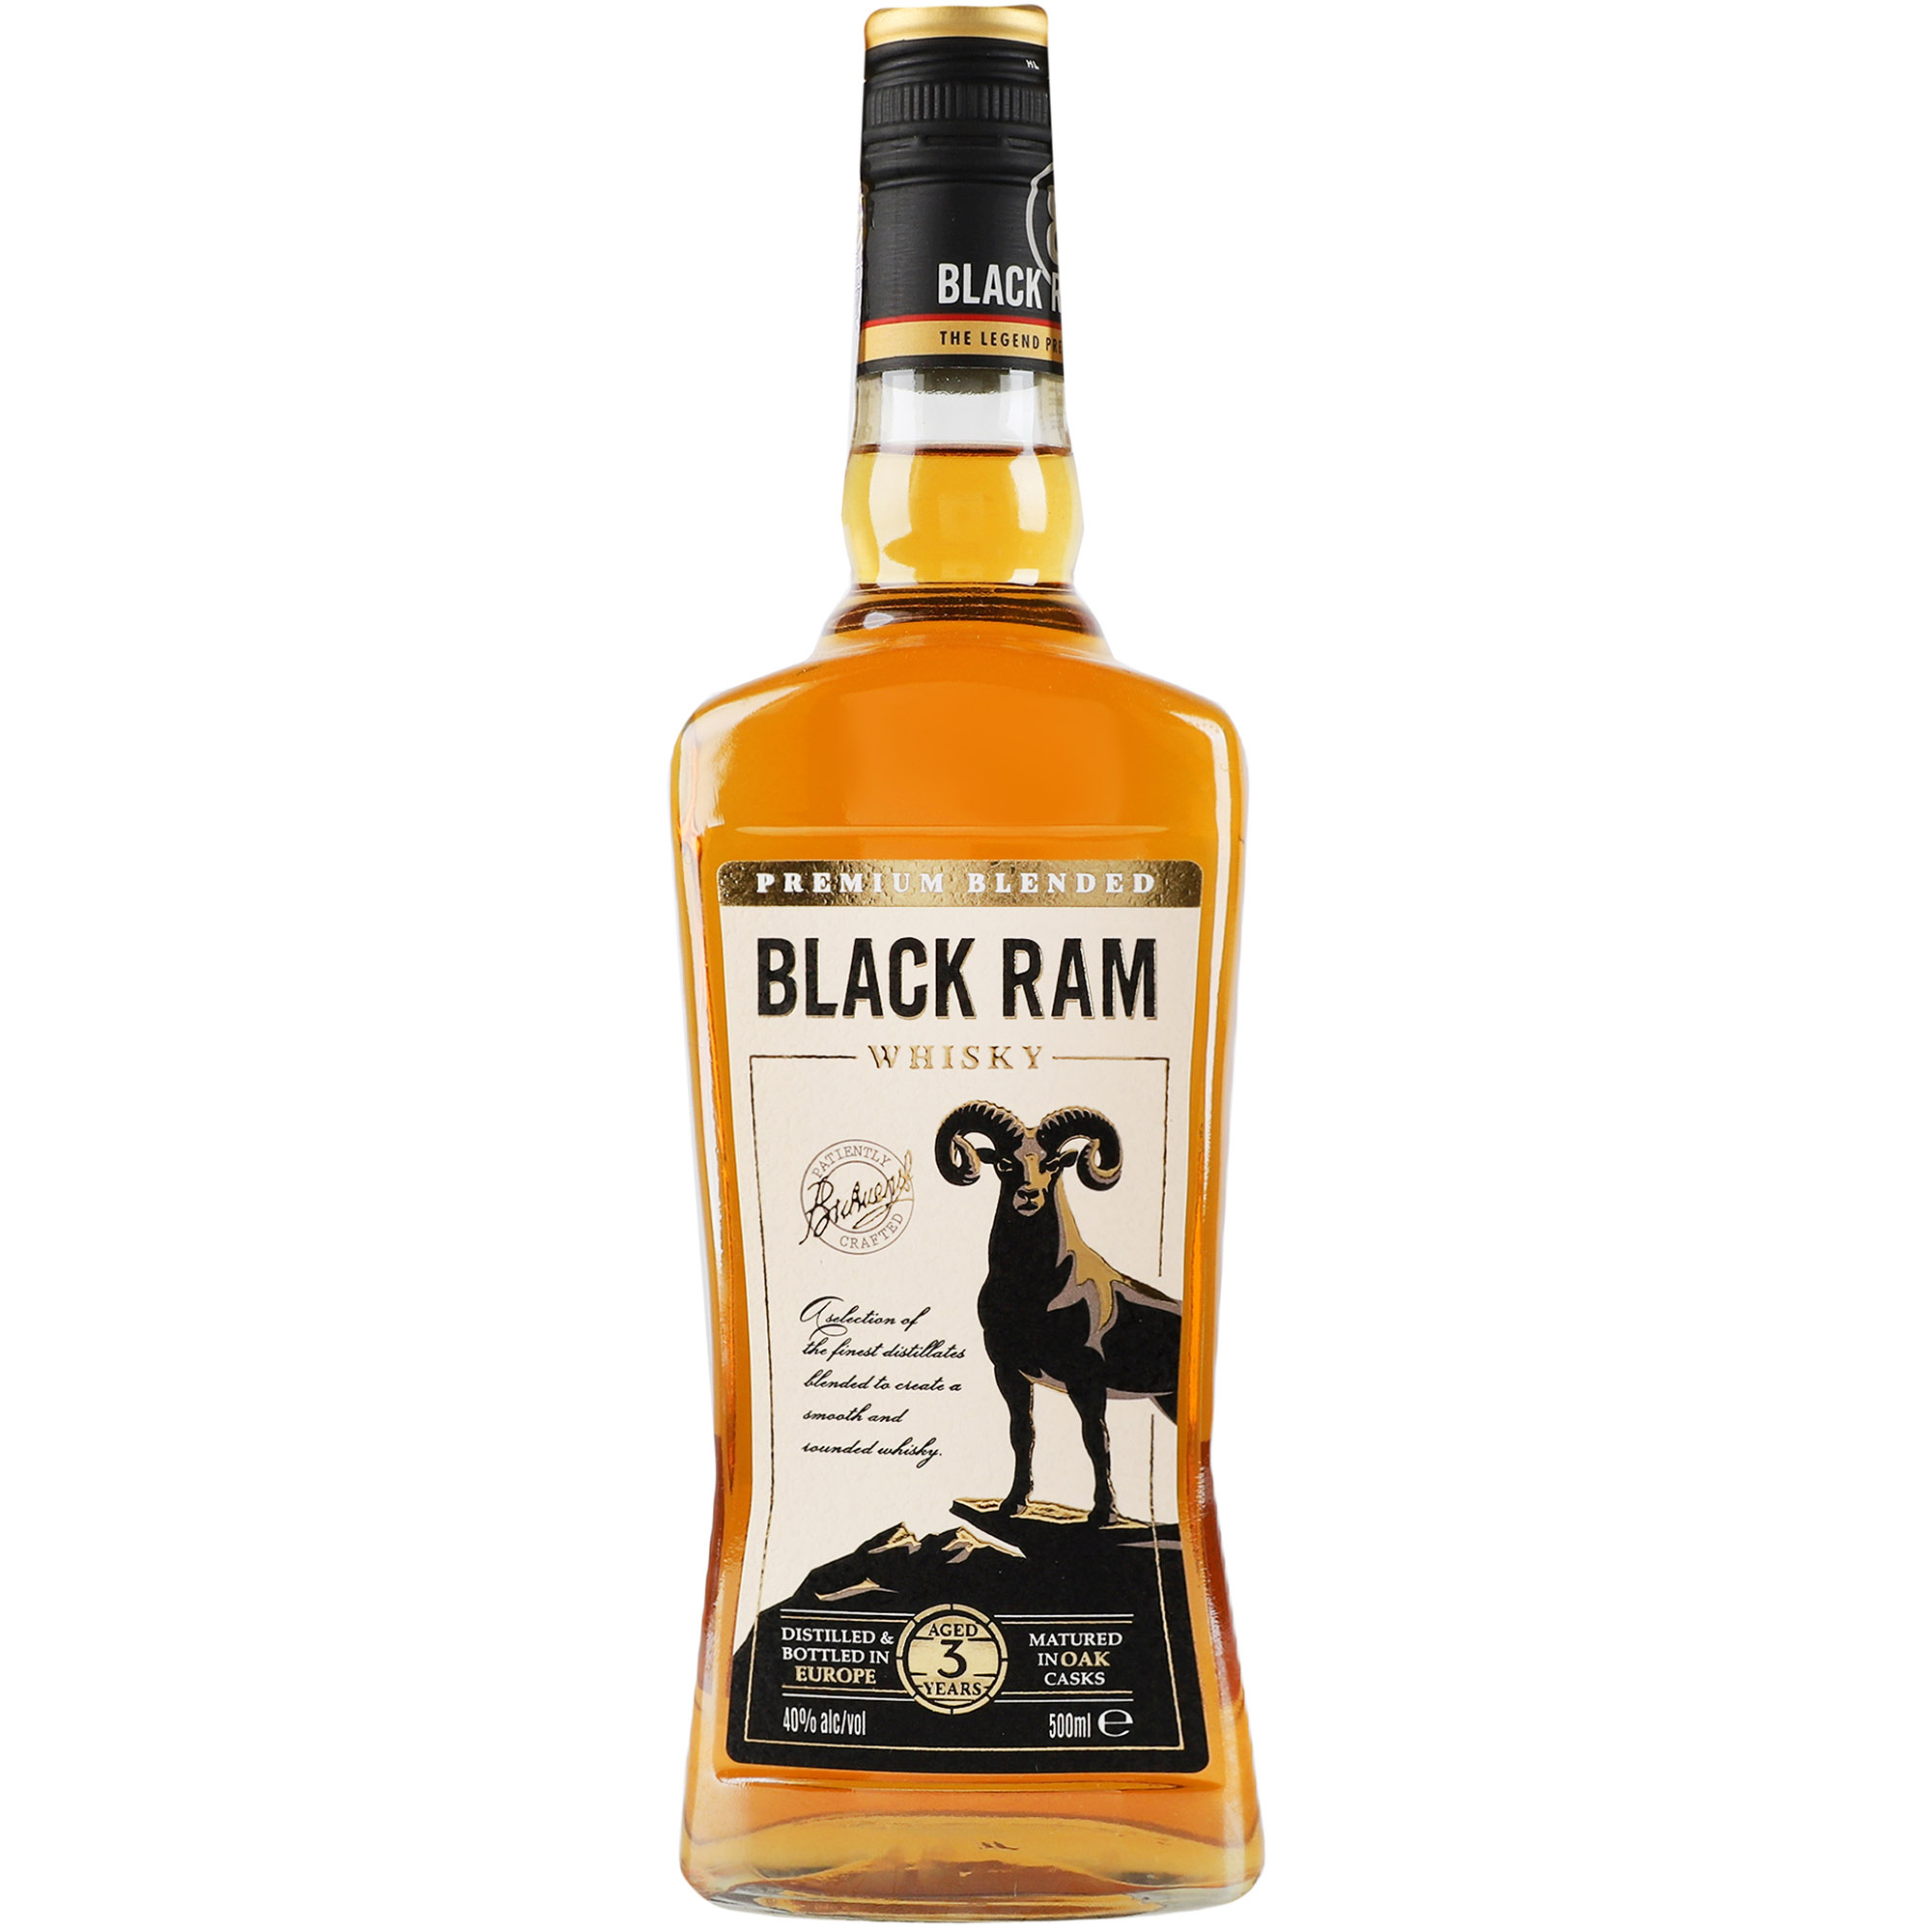 Віскі Black Ram 3 yo Premium Blended Whisky 40% 0.5 л - фото 1